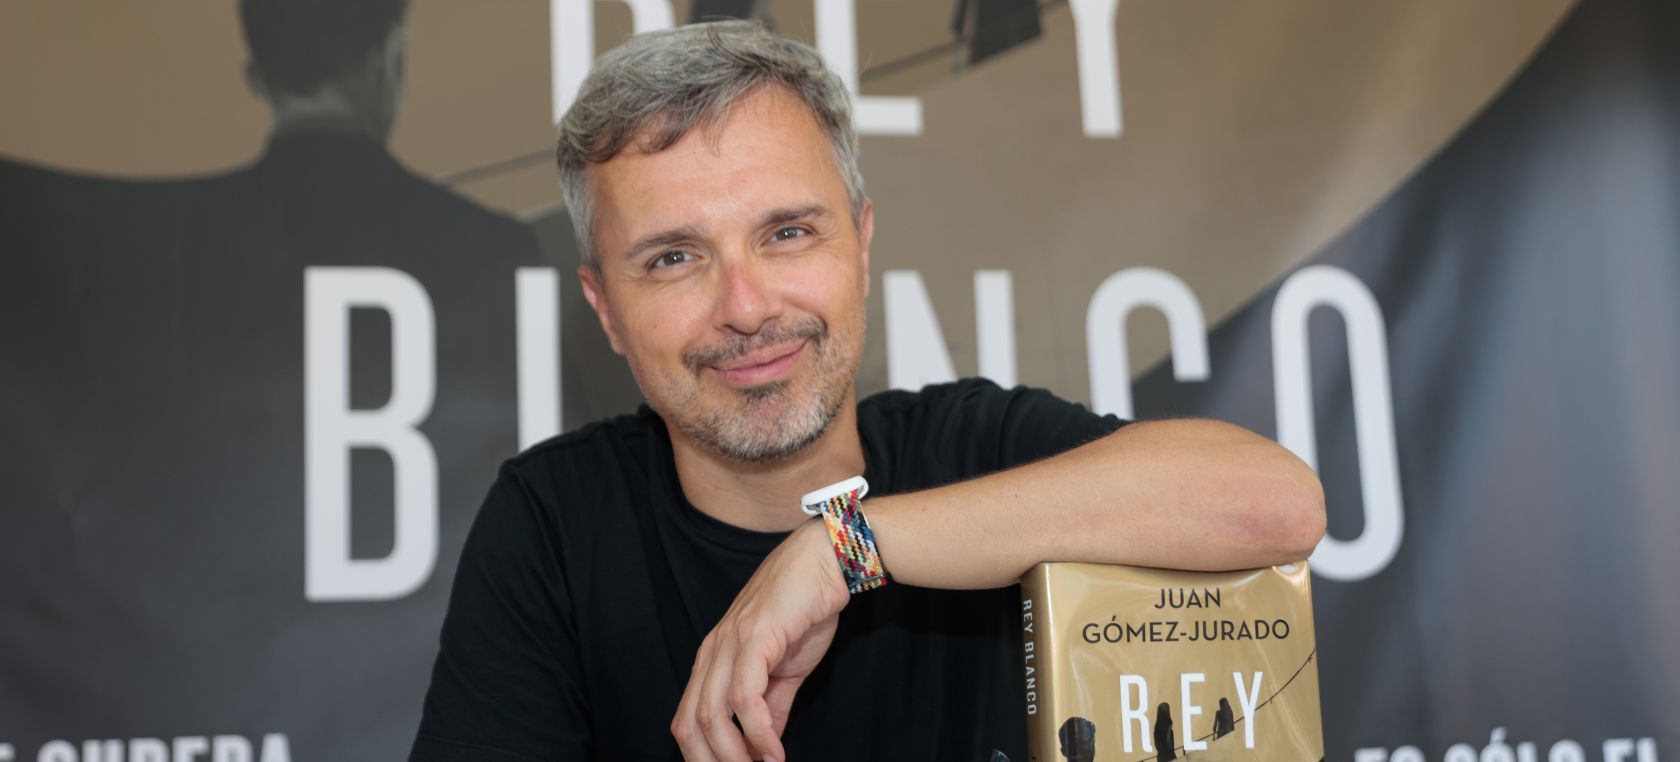 Complacer Romper El propietario Juan Gómez-Jurado, el autor más vendido de nuestro país, comparte junto a  Bárbara Montes su Top 5 libros 2021 | Actualidad | LOS40